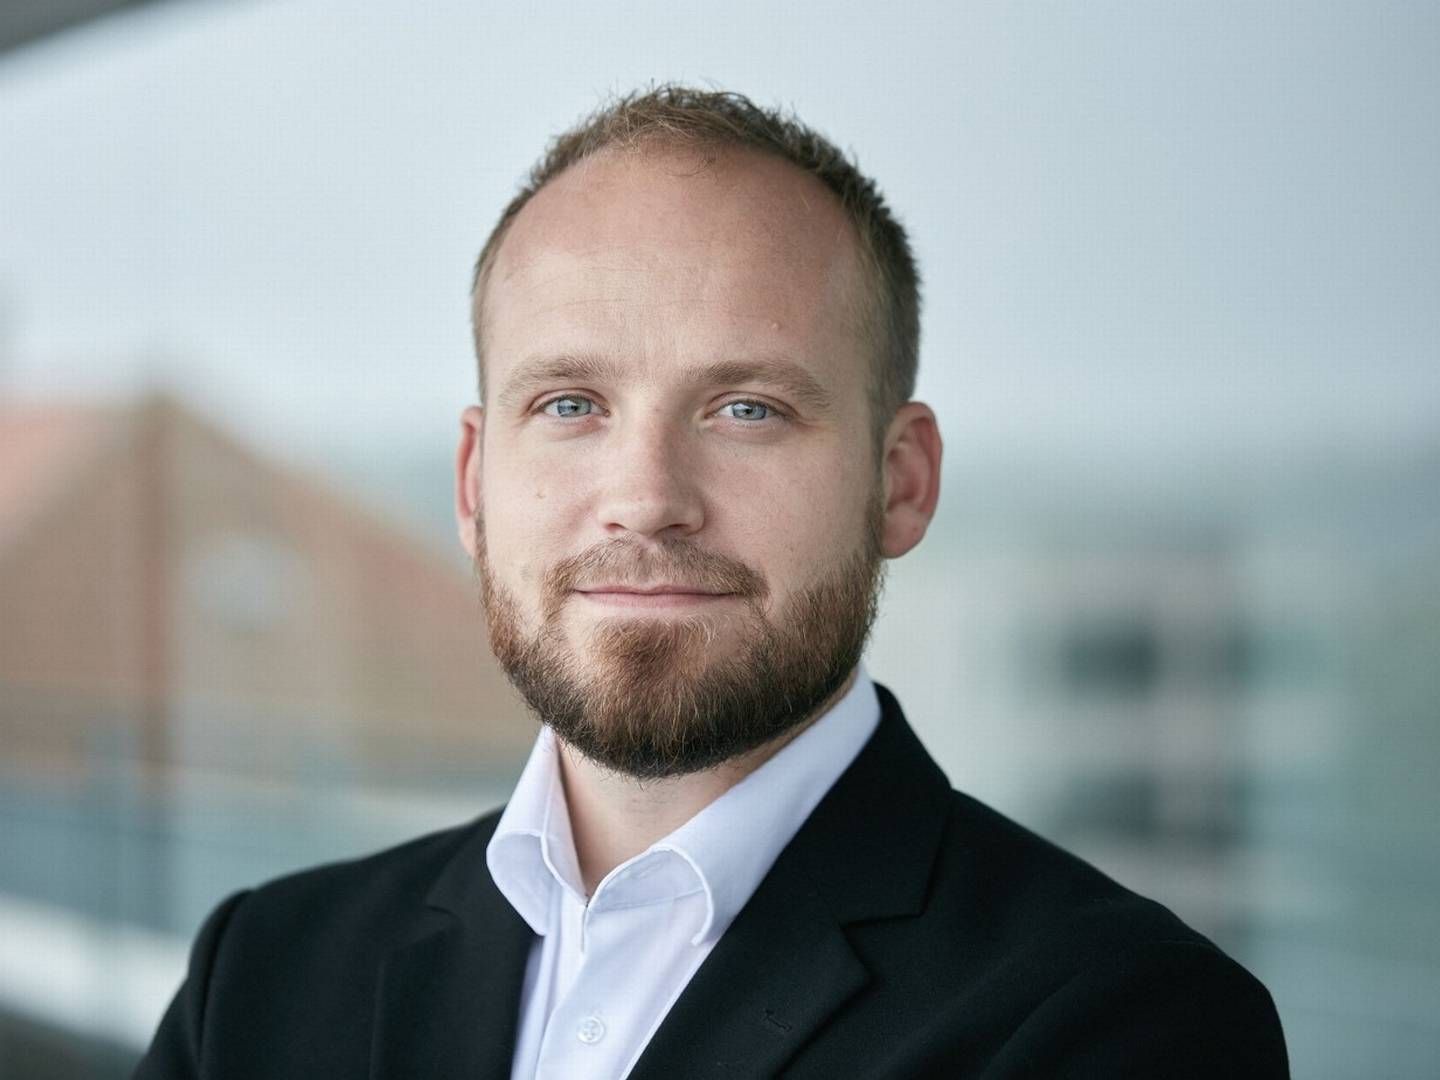 Kristian Kjer er adm. direktør for Stockrate, som nu kommer på svenske hænder. | Foto: Max Matthiessen/pr